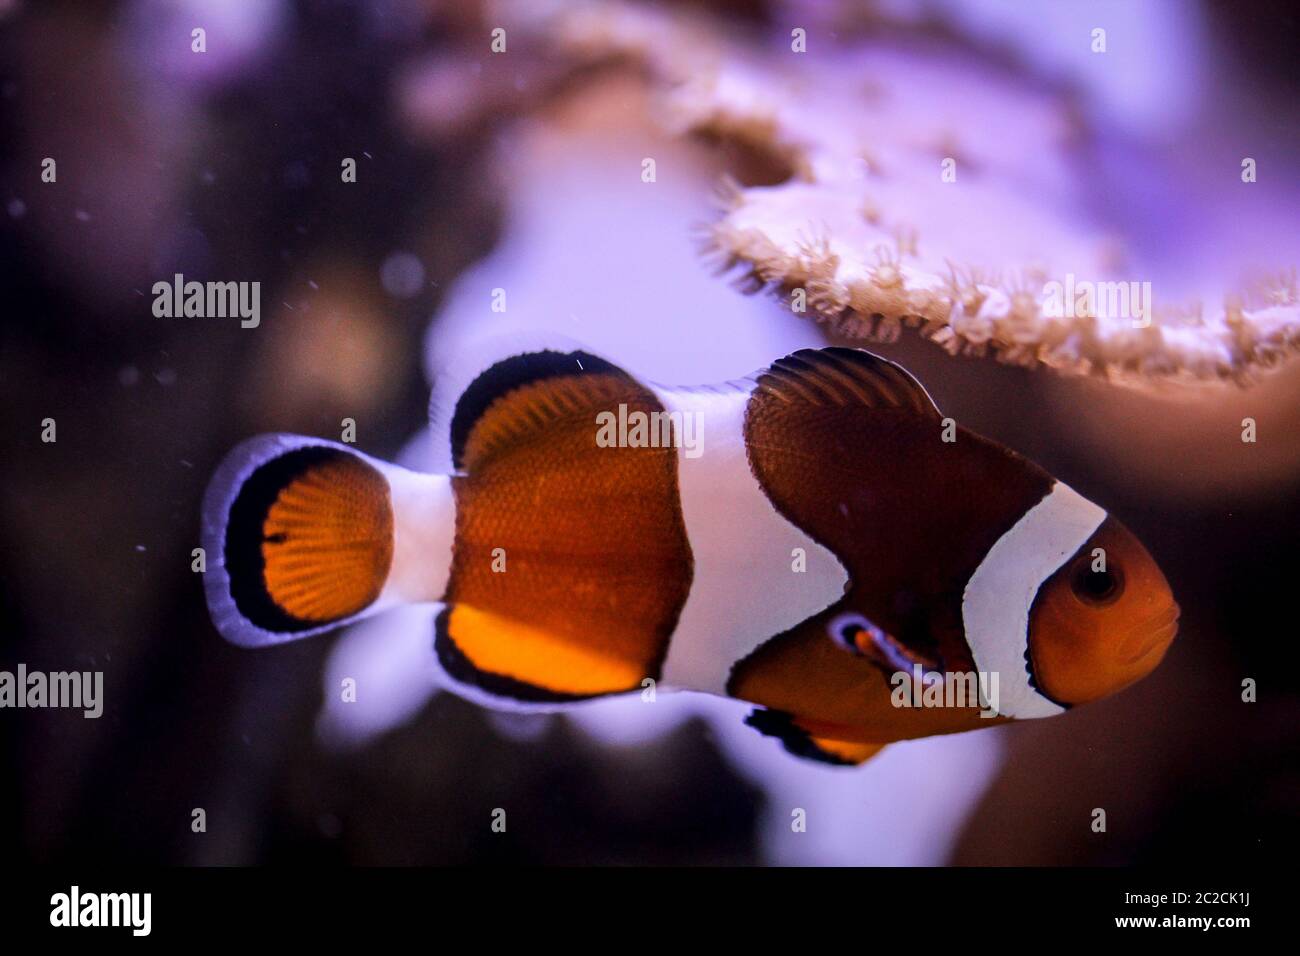 Detail eines Anemonfischs im Aquarium Stockfoto